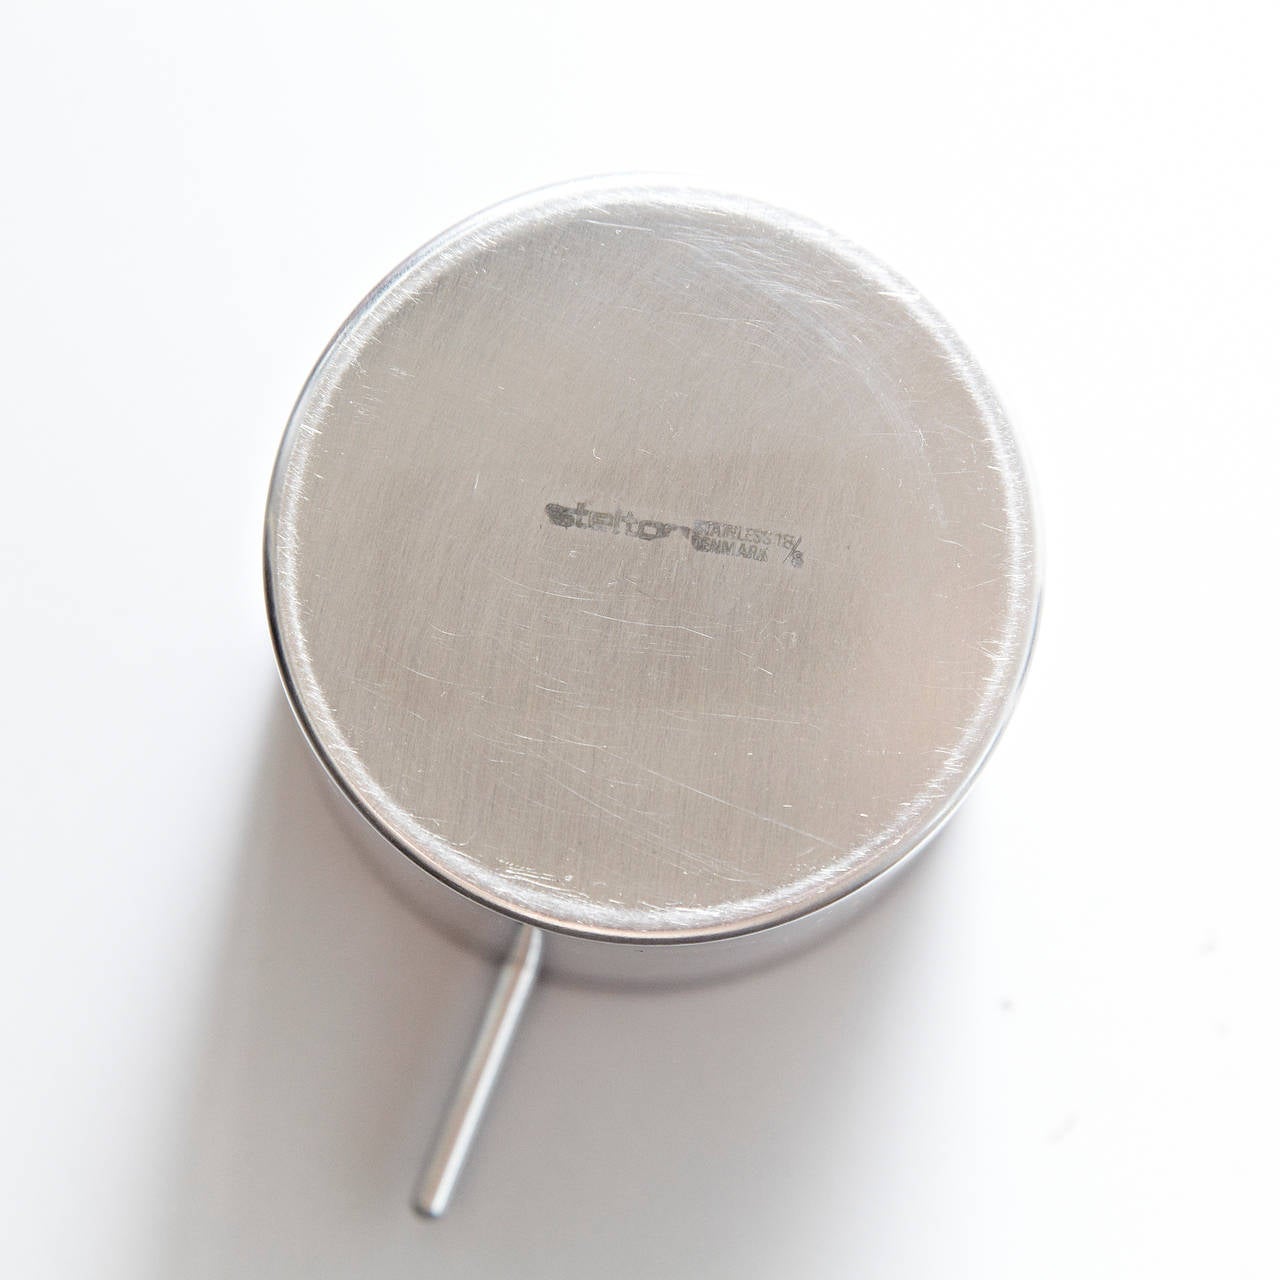 Mid-Century Modern Arne Jacobsen ashtray for Stelton